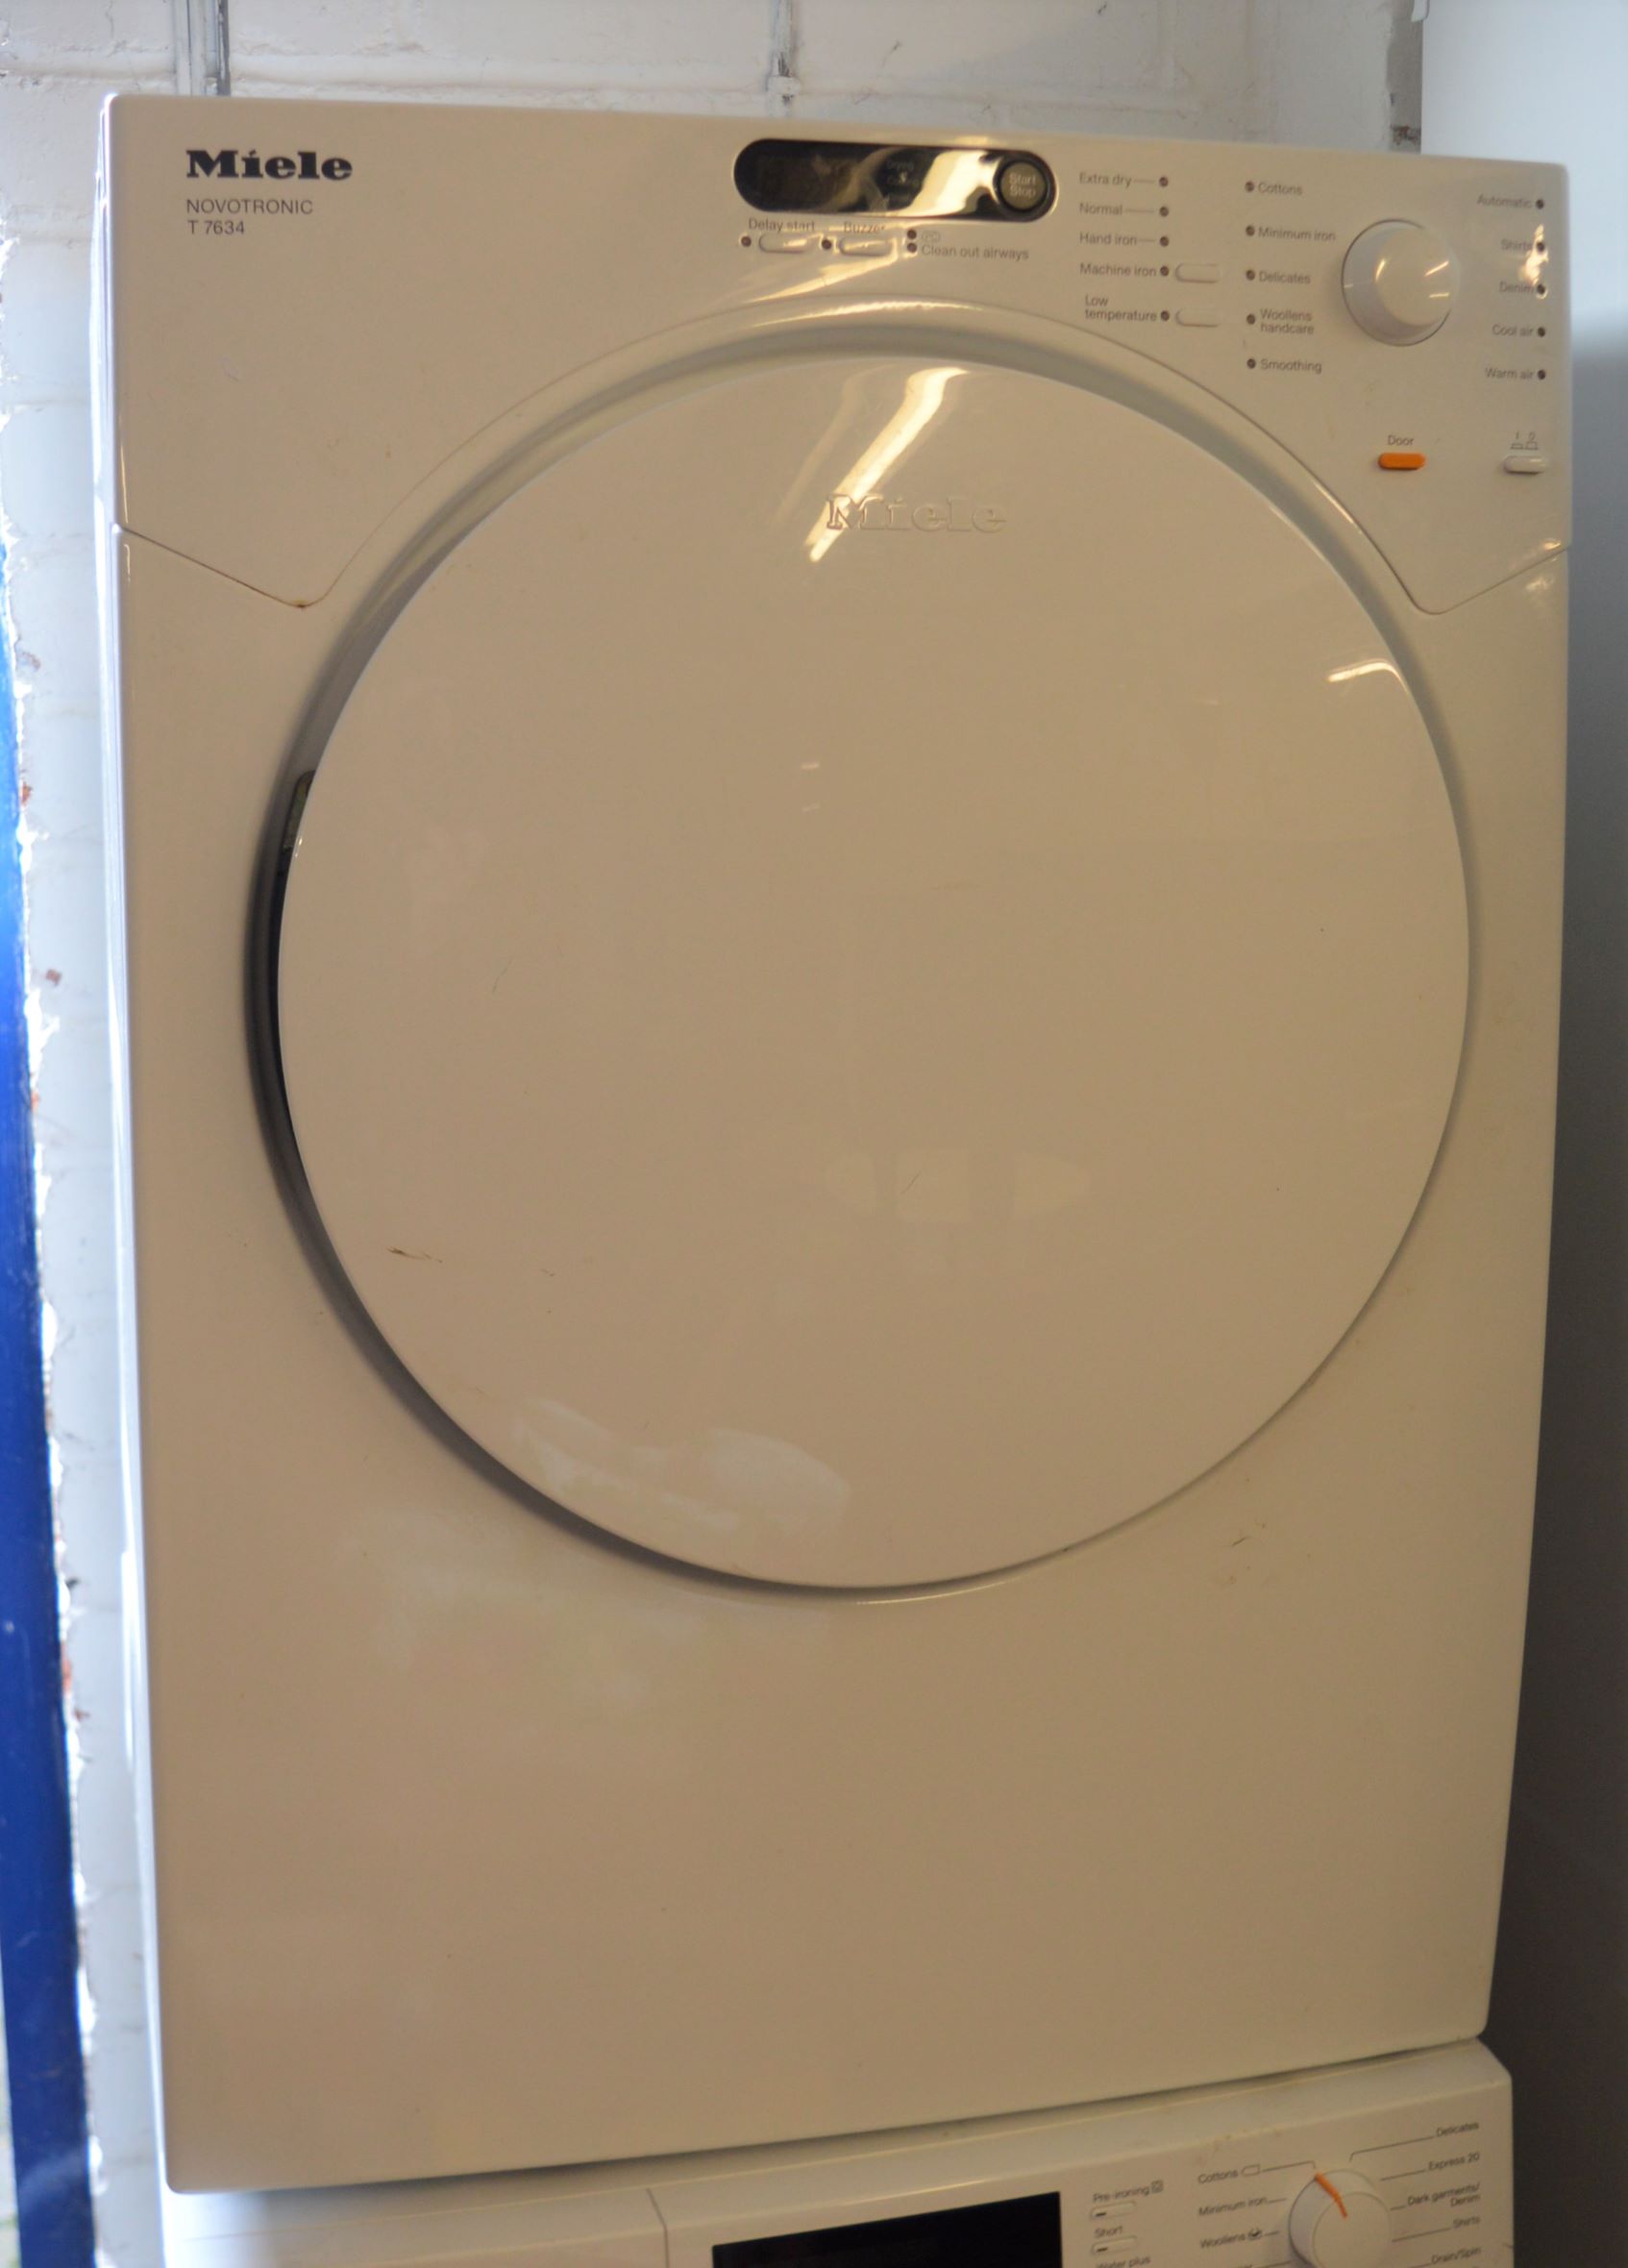 Miele Novotronic T7634 tumble dryer